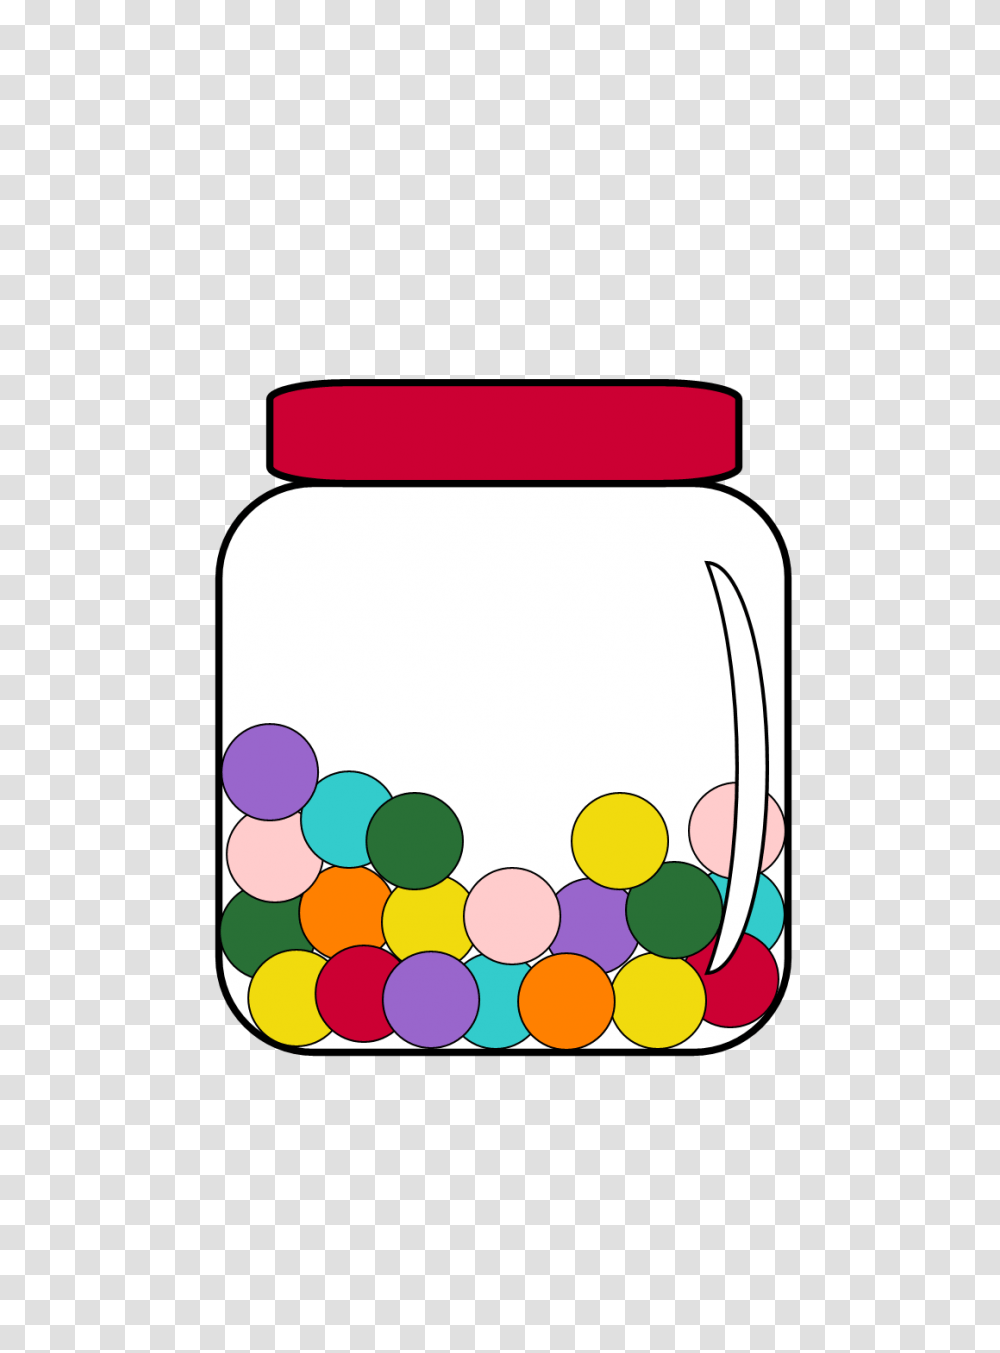 Free Clipart N Images Free Clip Art Candy Jar, Cylinder, Medication, Vase, Pottery Transparent Png